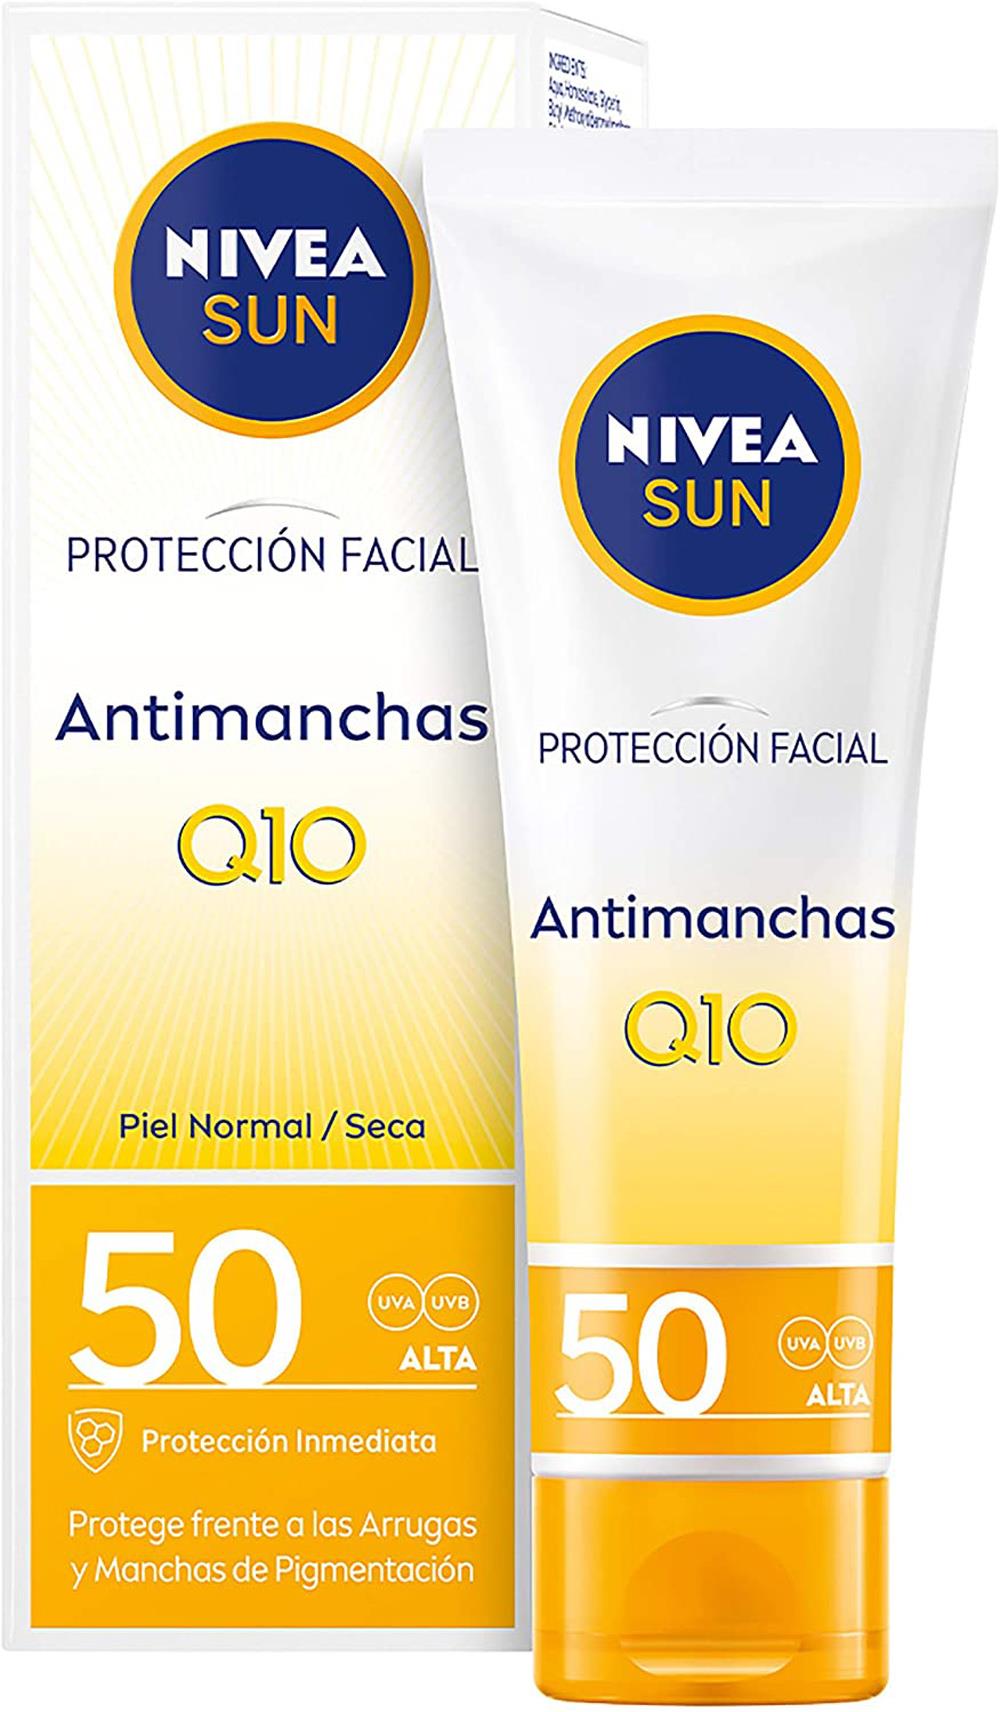 Crema facial con protección, de Nivea Sun